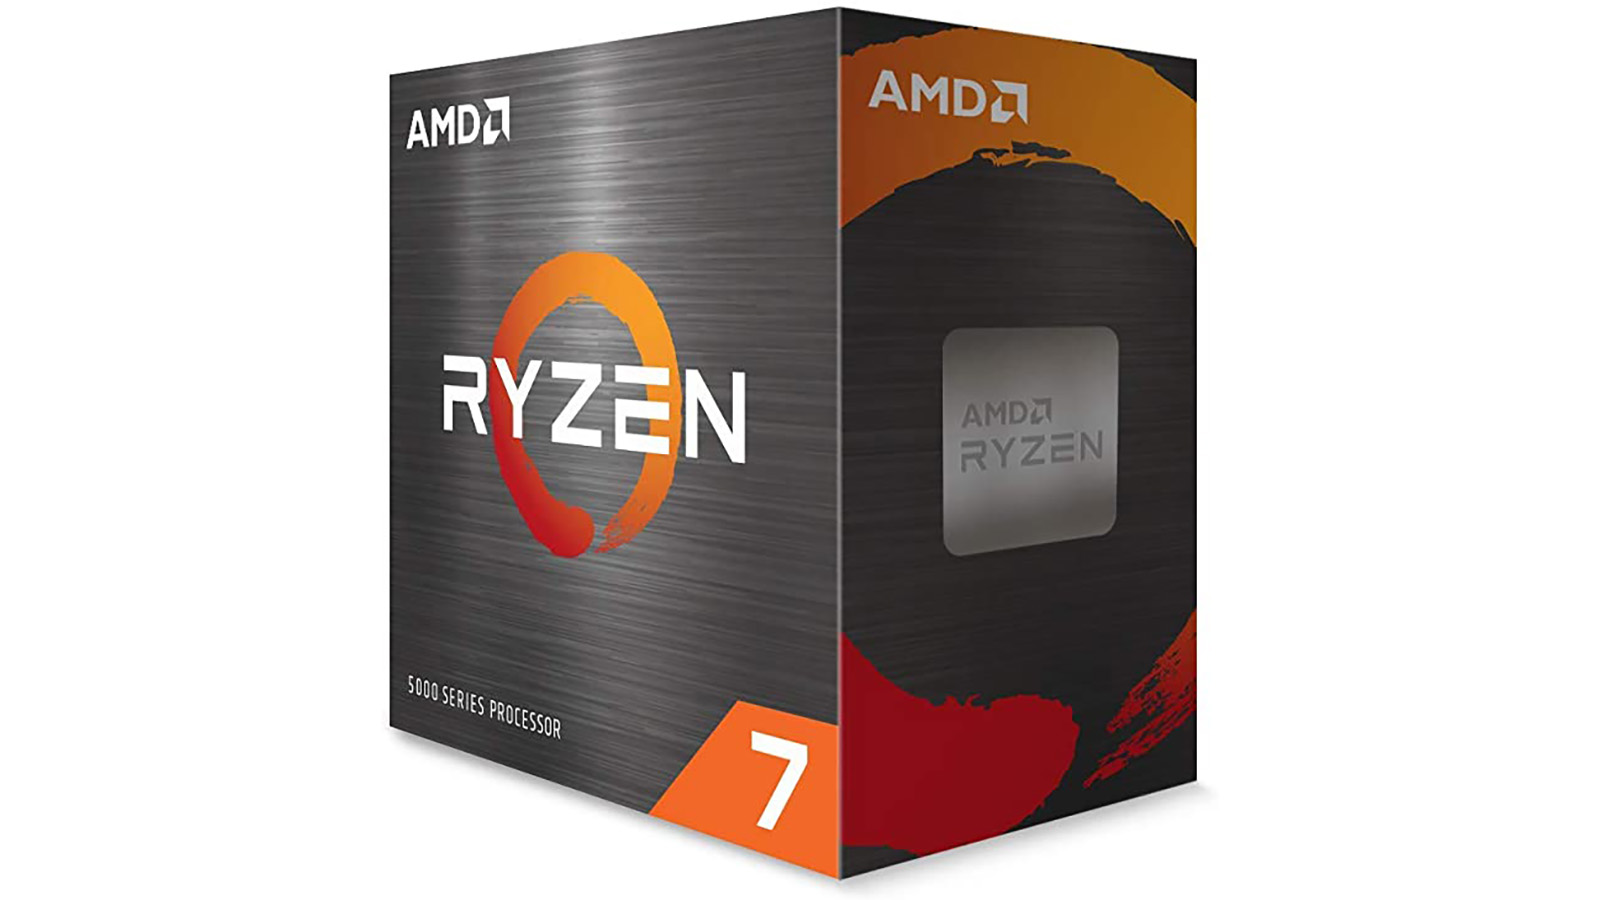 Emballage d'un processeur AMD Ryzen 7 série 5000 sur fond blanc